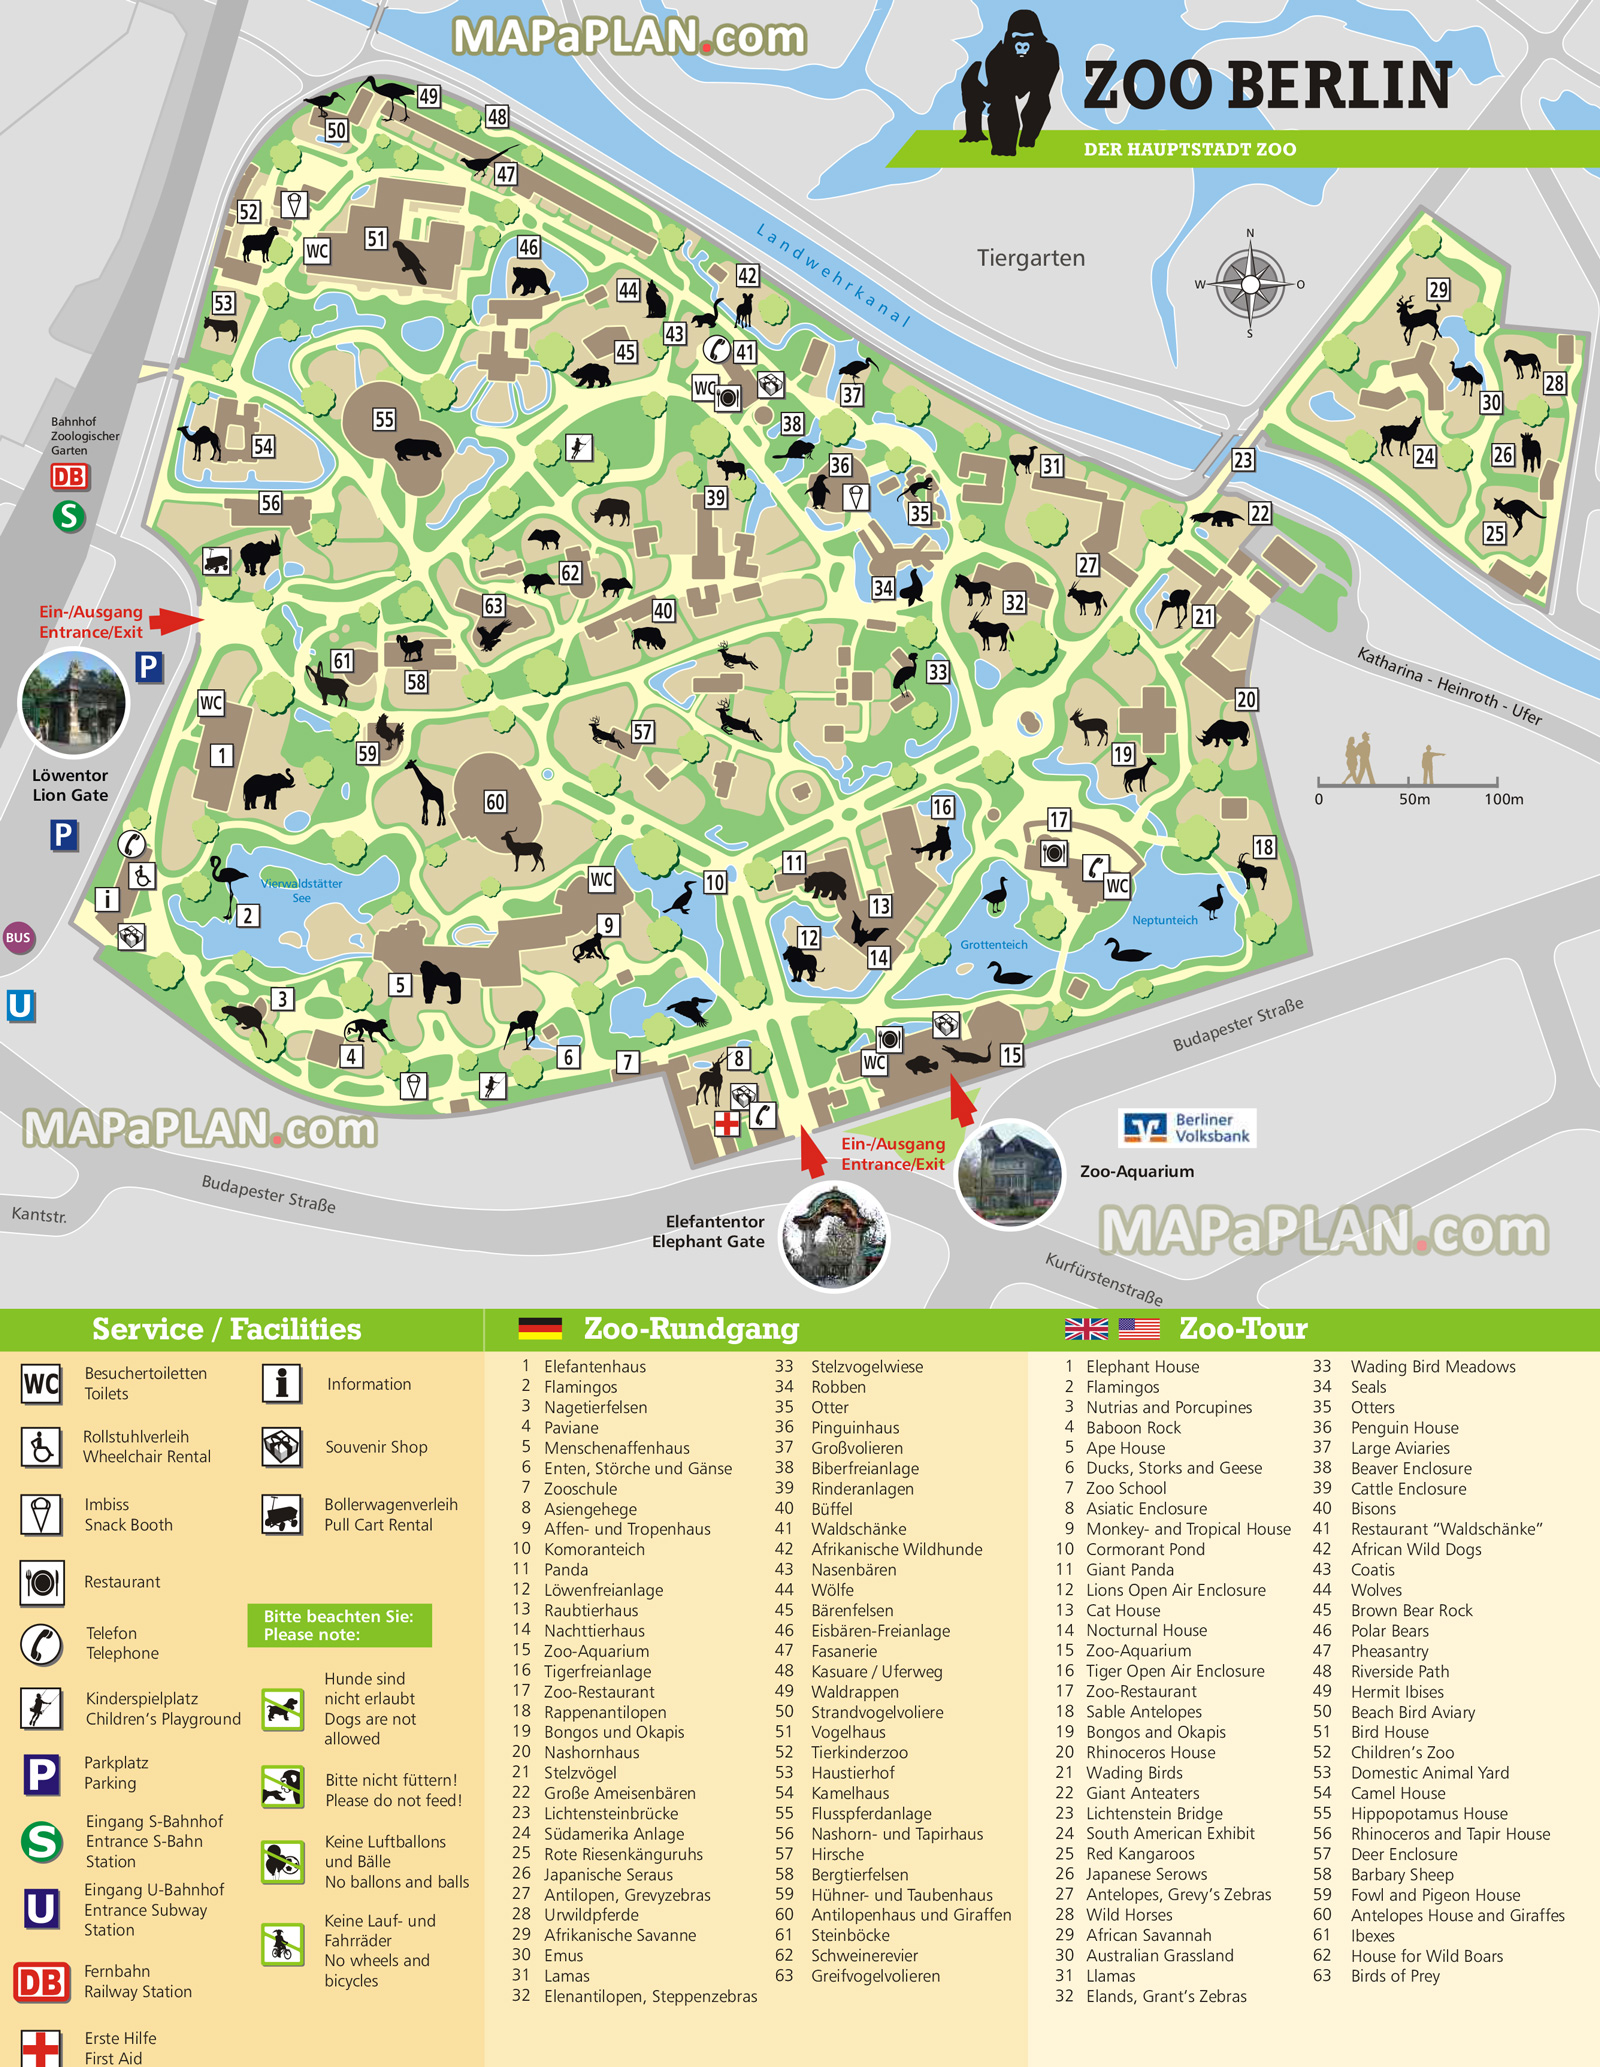 zoo tiergarten hauptstadt zoo major tourism highlights facilities Berlin top tourist attractions map